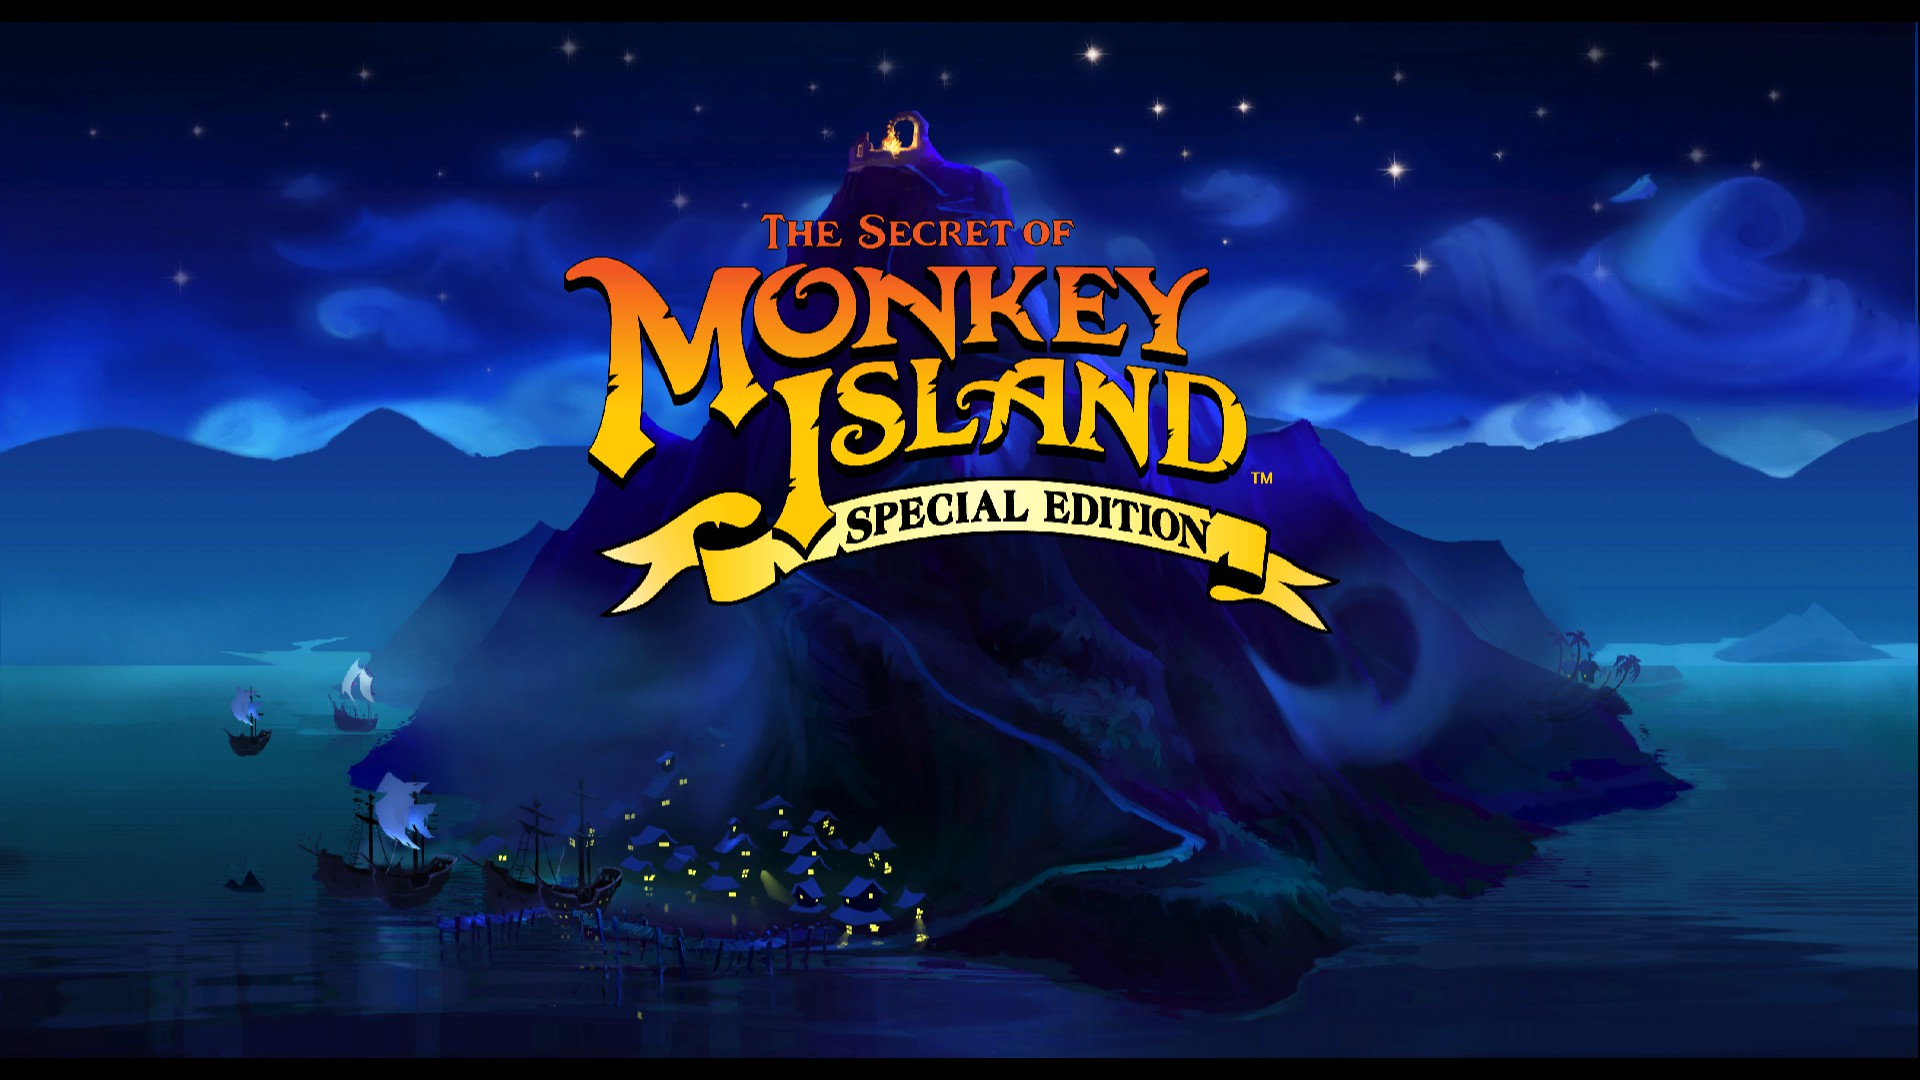 yeni monkey island oyunu return to monkey island 2022’de geliyor